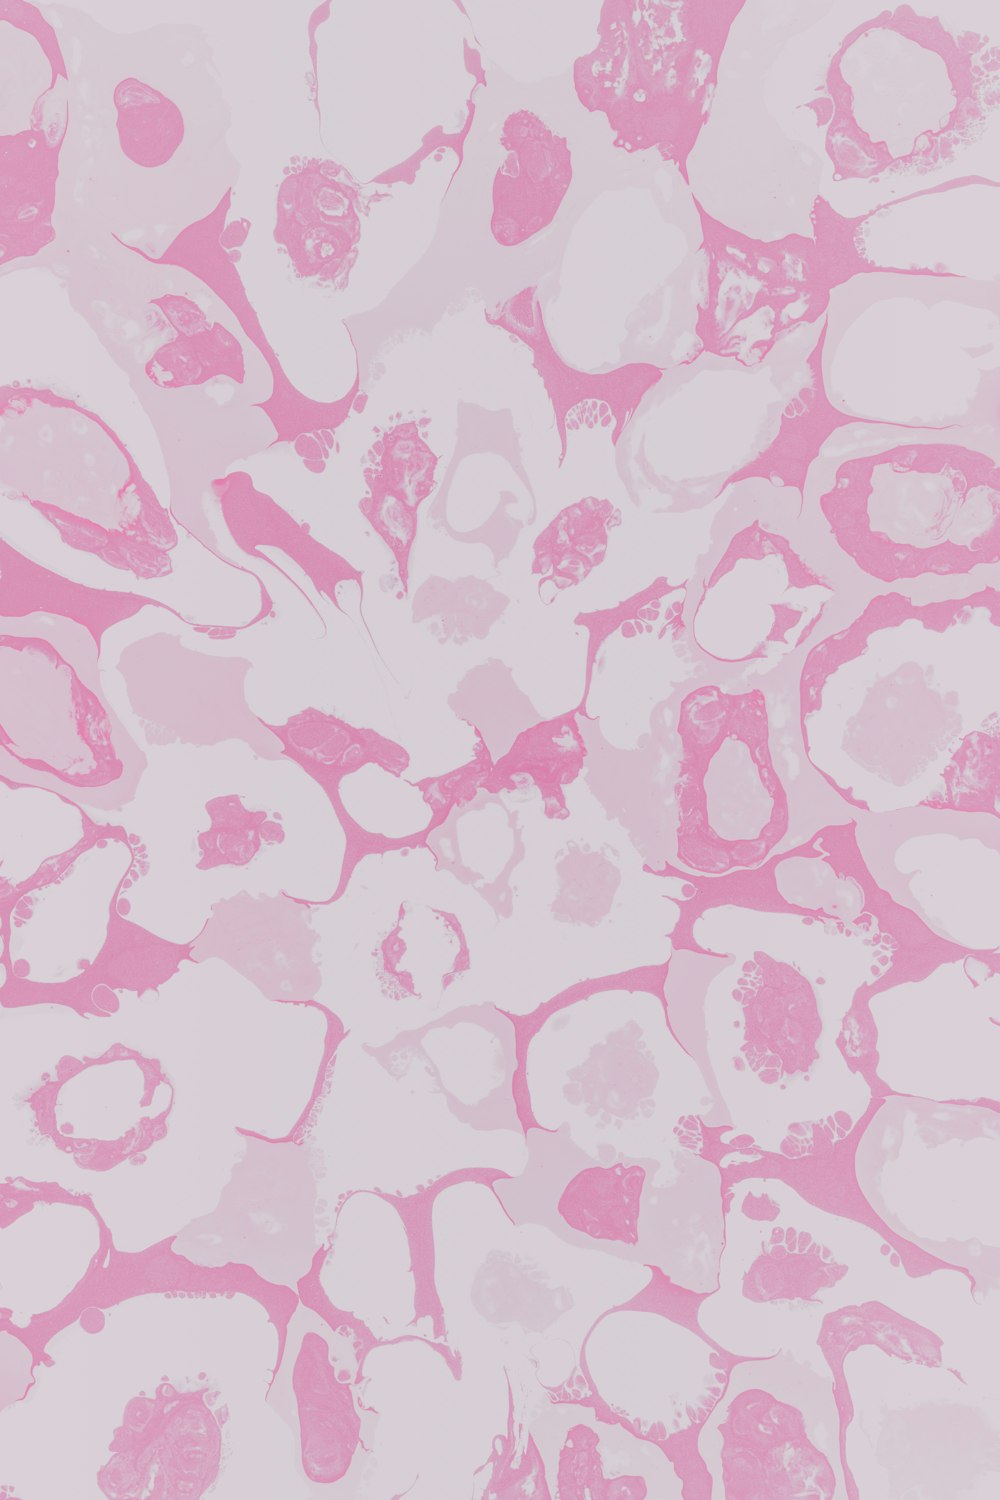 tecido floral rosa e branco